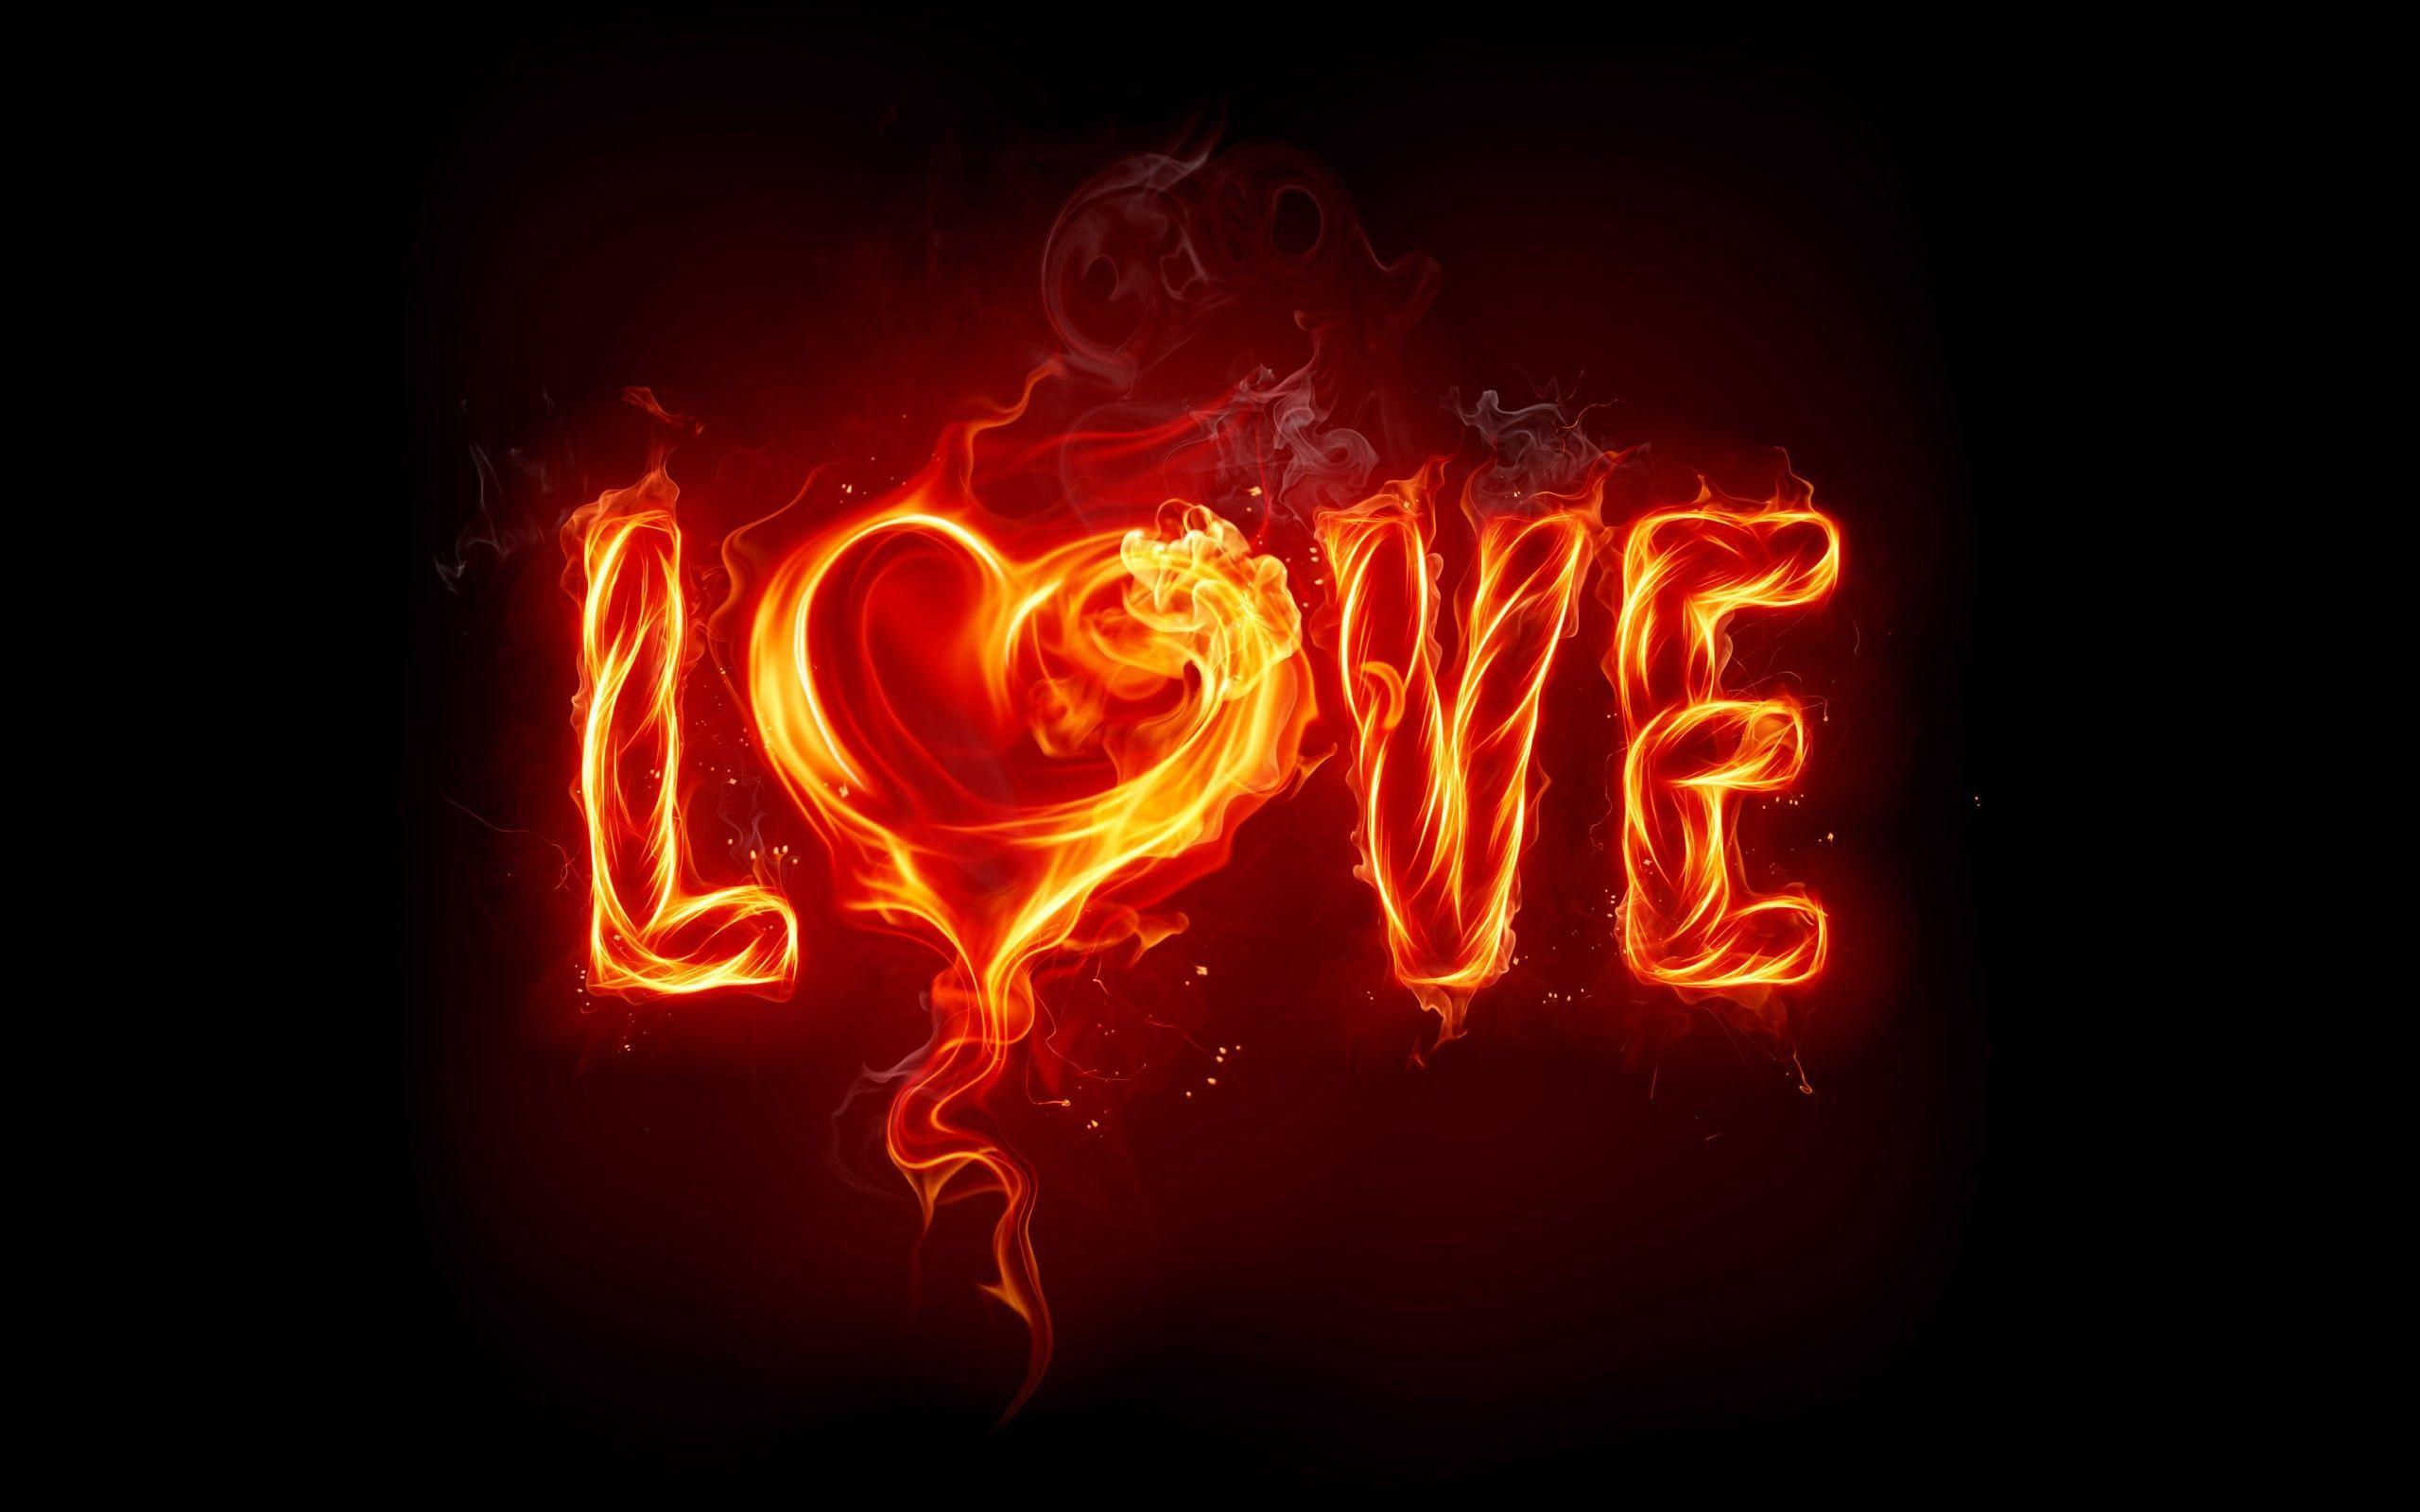 House Music Love On Fire HD Jootix 2560x1600 298477 Wallpaper